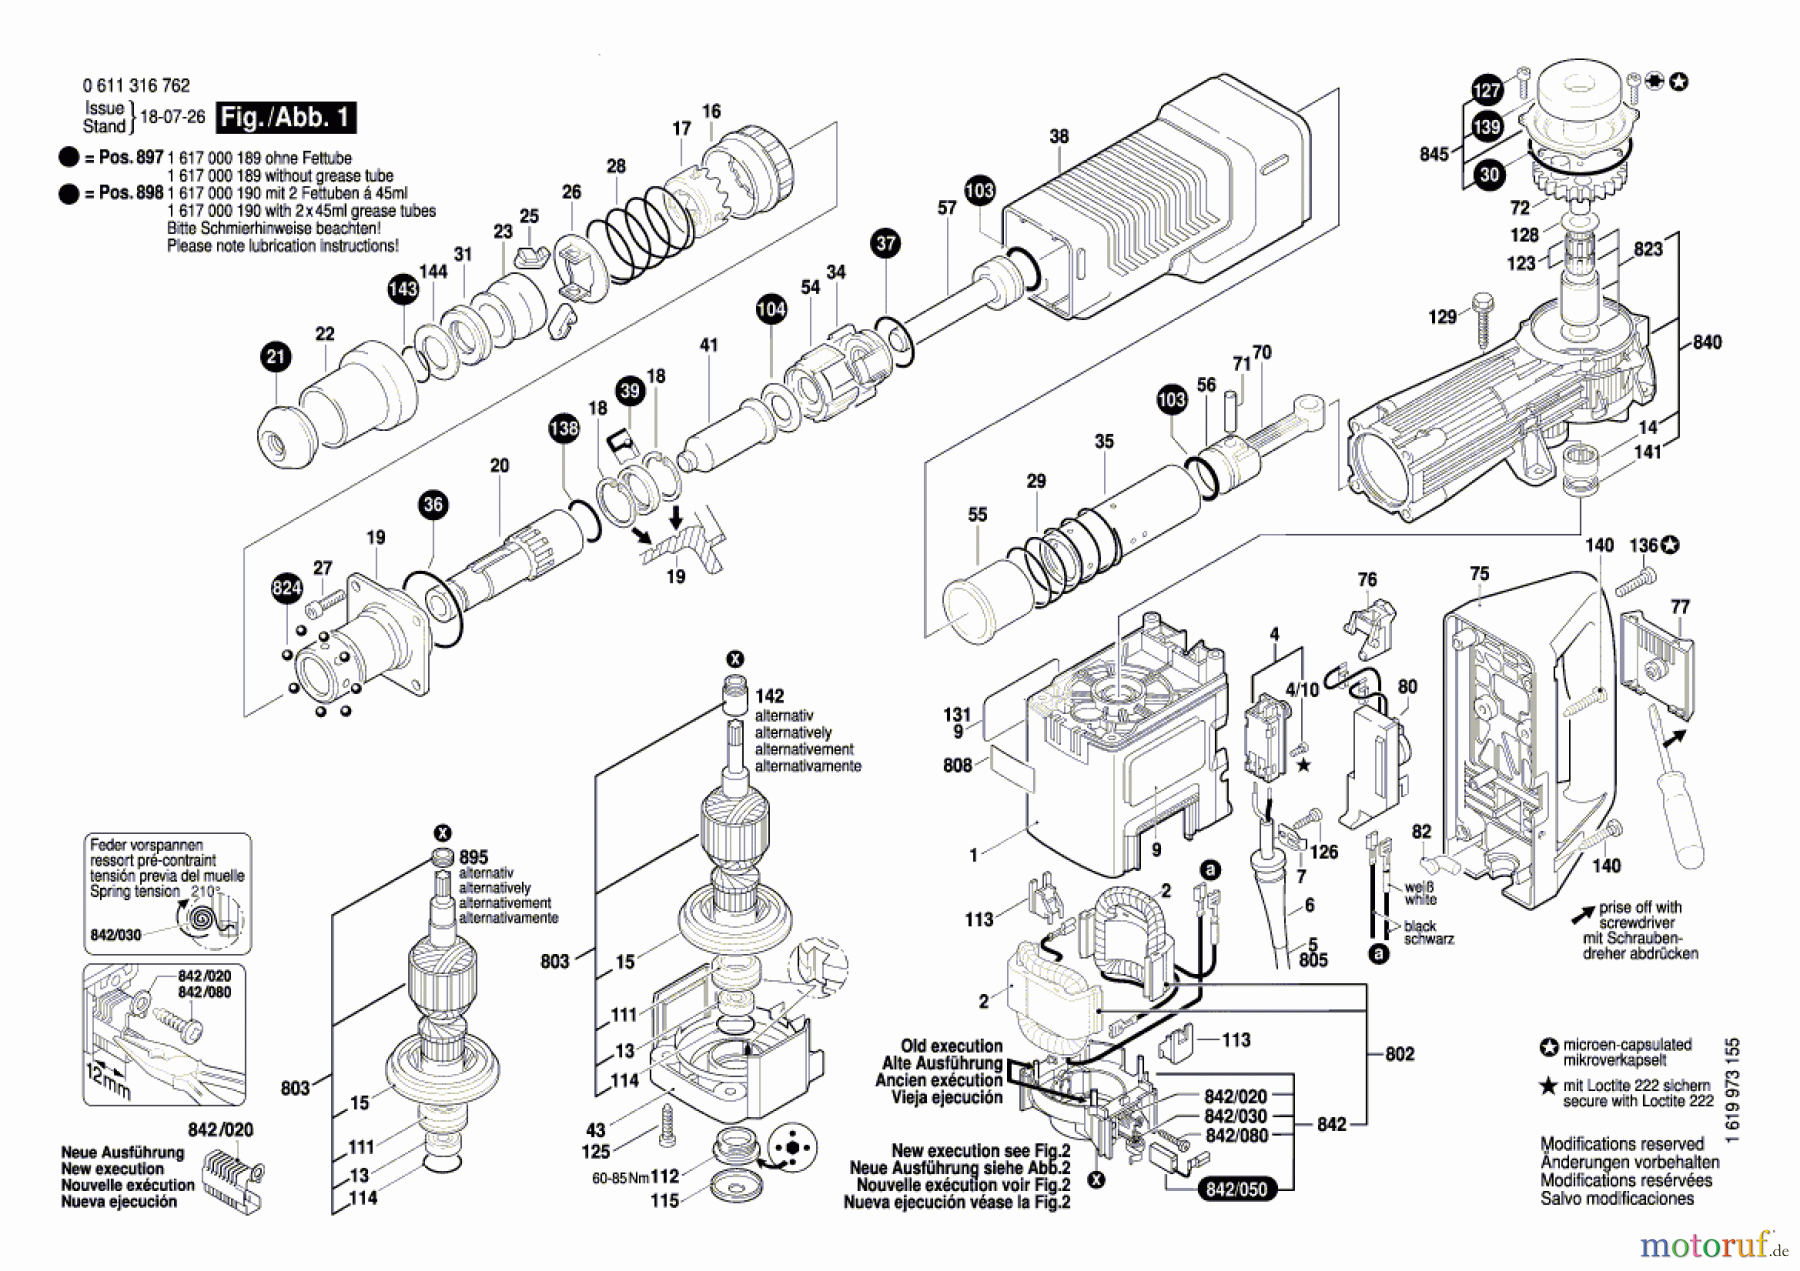  Bosch Werkzeug Schlaghammer BTI-SH 11 E Seite 1